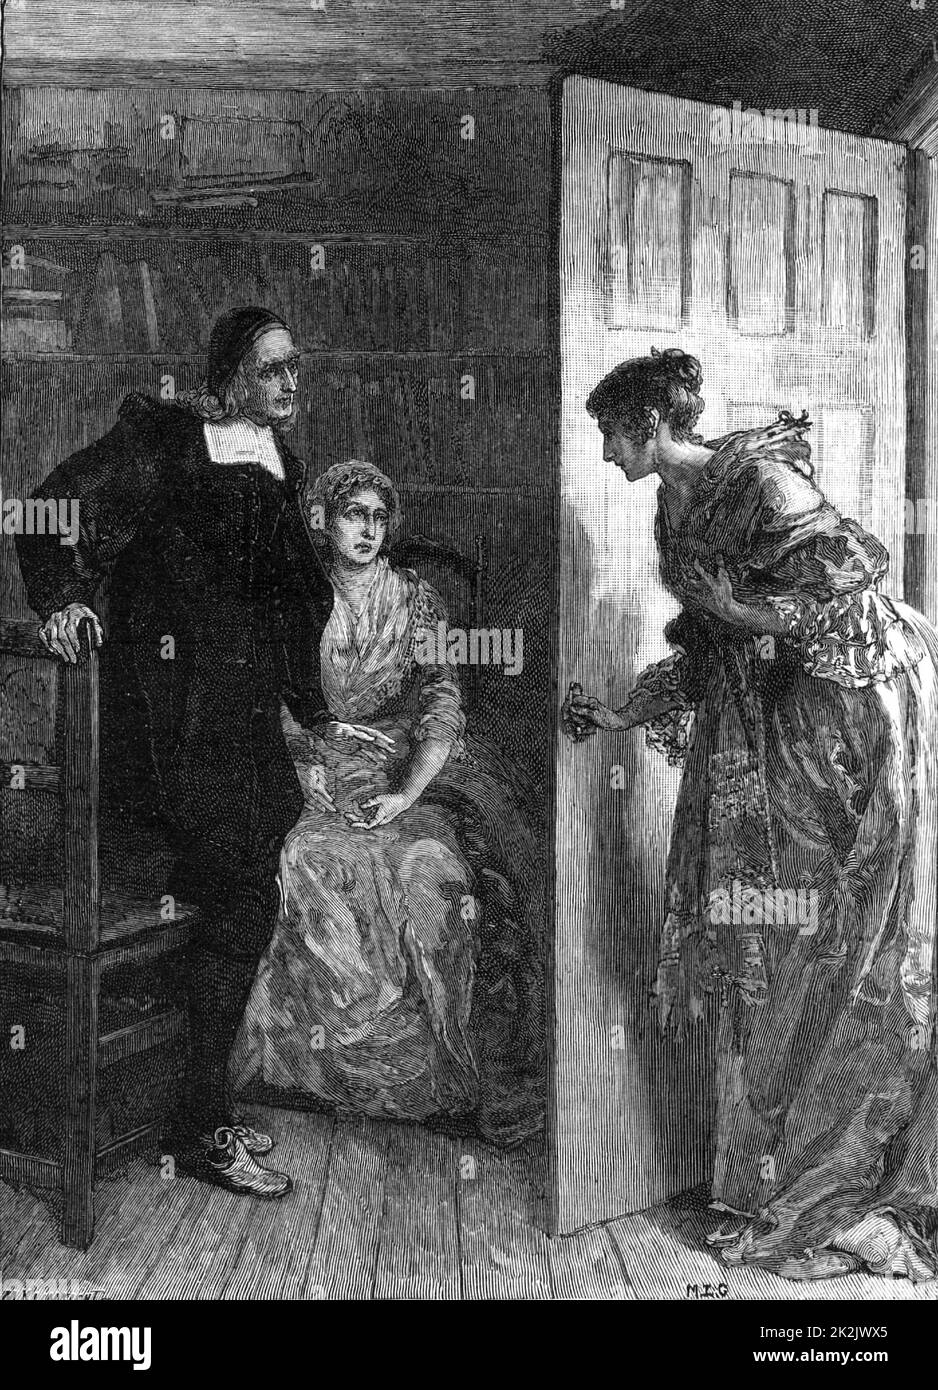 Richard Baxter (1615-91) Englisch nicht konformistischer Geistlicher. Margaret Charlton, 20 Jahre, bat Richard Baxter, sie zu heiraten. Trotz ihrer Altersunterschiede hatten sie mehr als 20 glückliche Jahre zusammen, bis Margaret im Alter von 42 Jahren starb. Von 'The Quiver' (London, 1883). Gravur Stockfoto